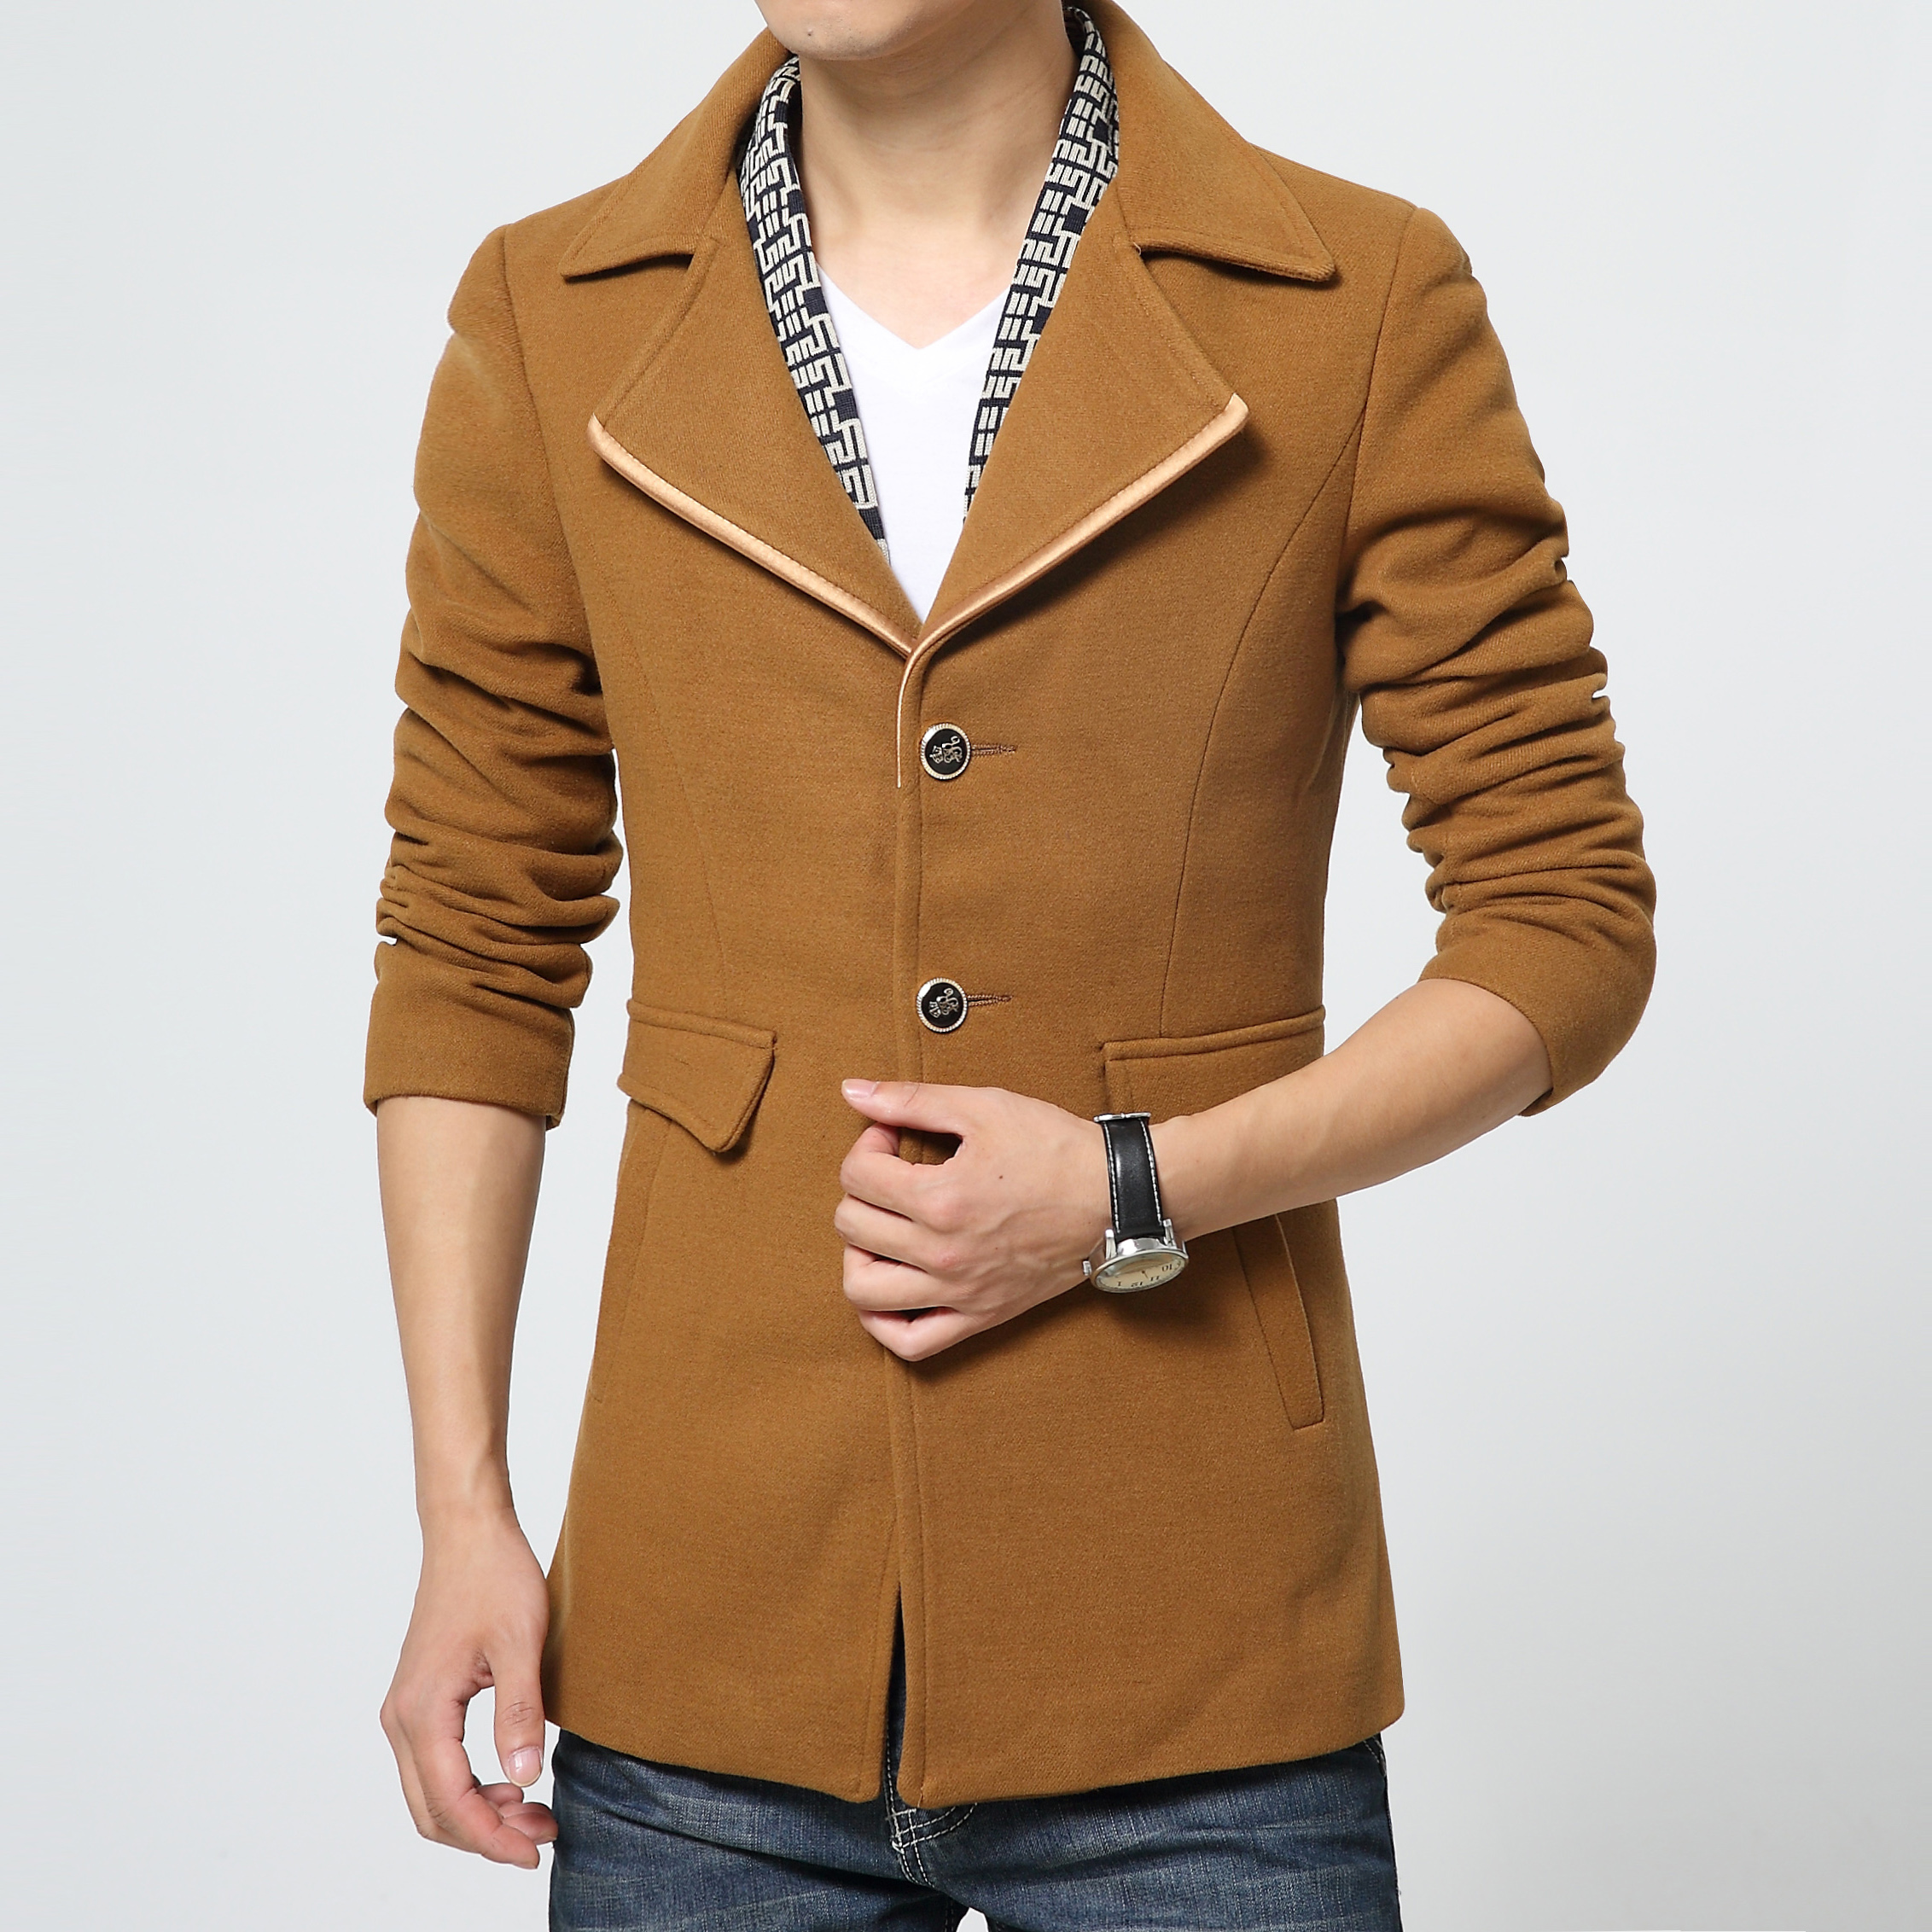 秋冬新款2015加厚加绒男士韩版中长款修身羊毛呢大衣男装呢子外套